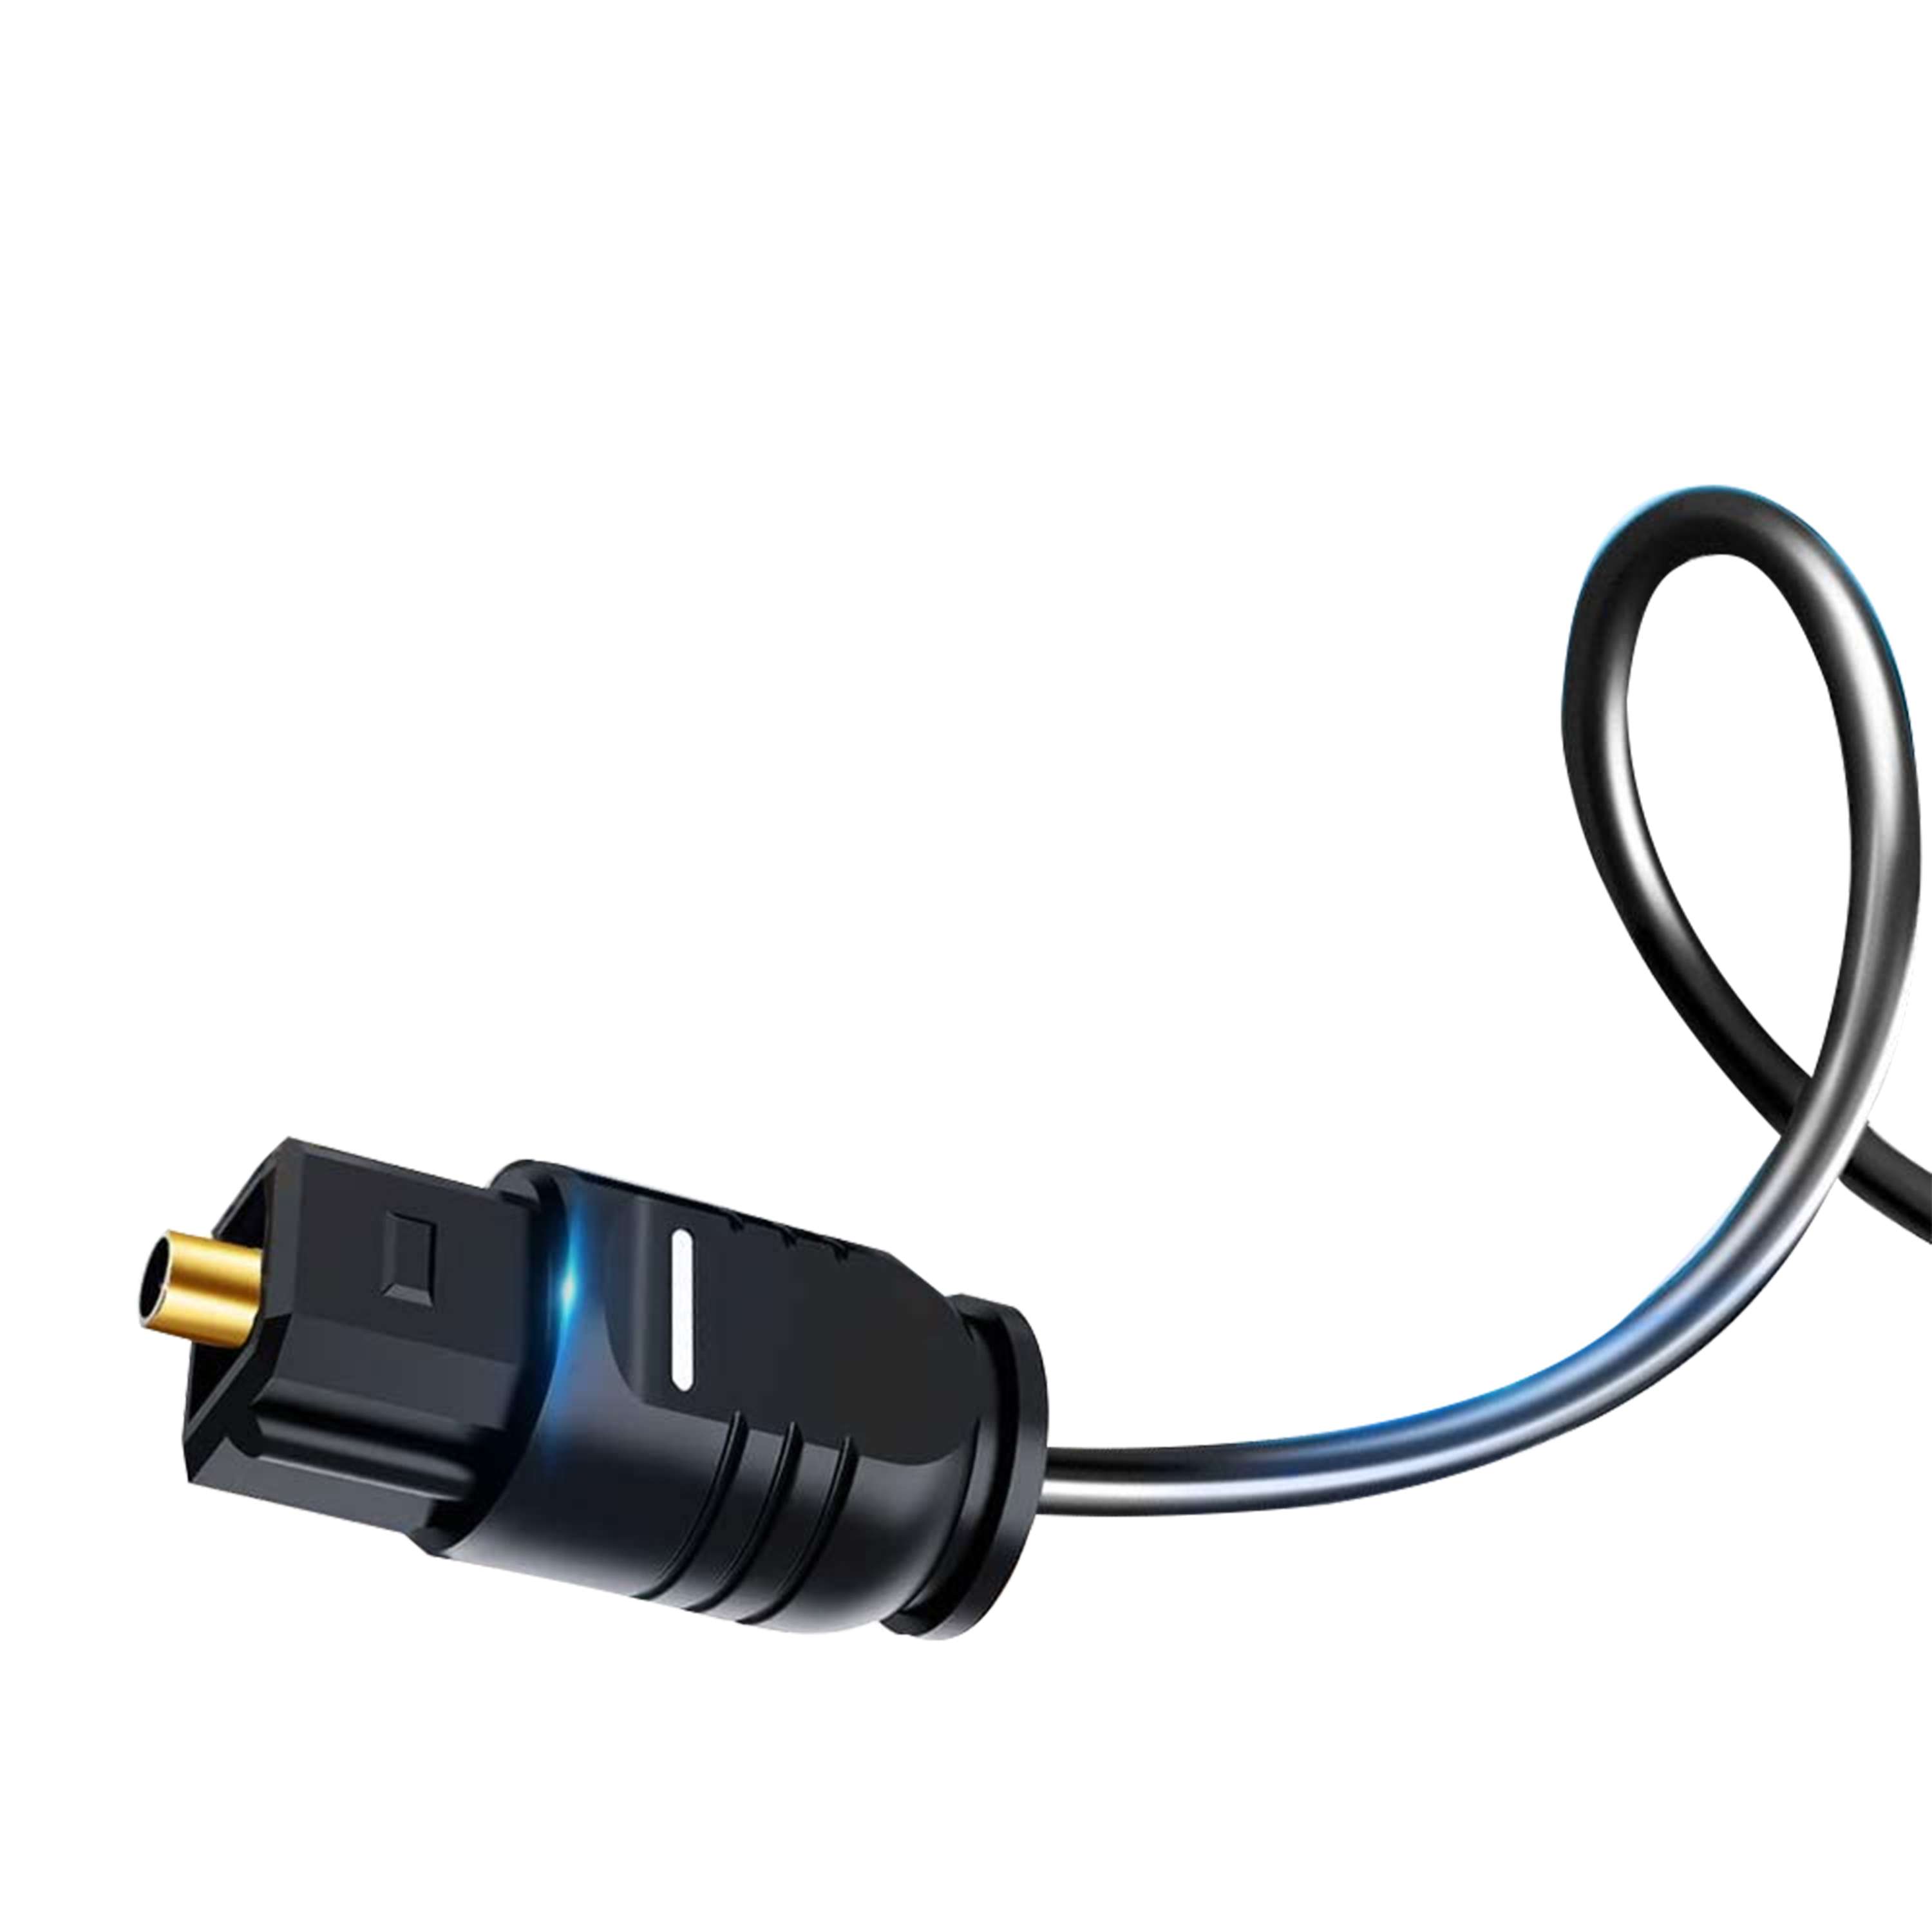 EMK Câble audio numérique optique Toslink – 5M [gaine en nylon tressé,  durable et flexible] Cordon fibre optique pour home cinéma, barre de son,  TV